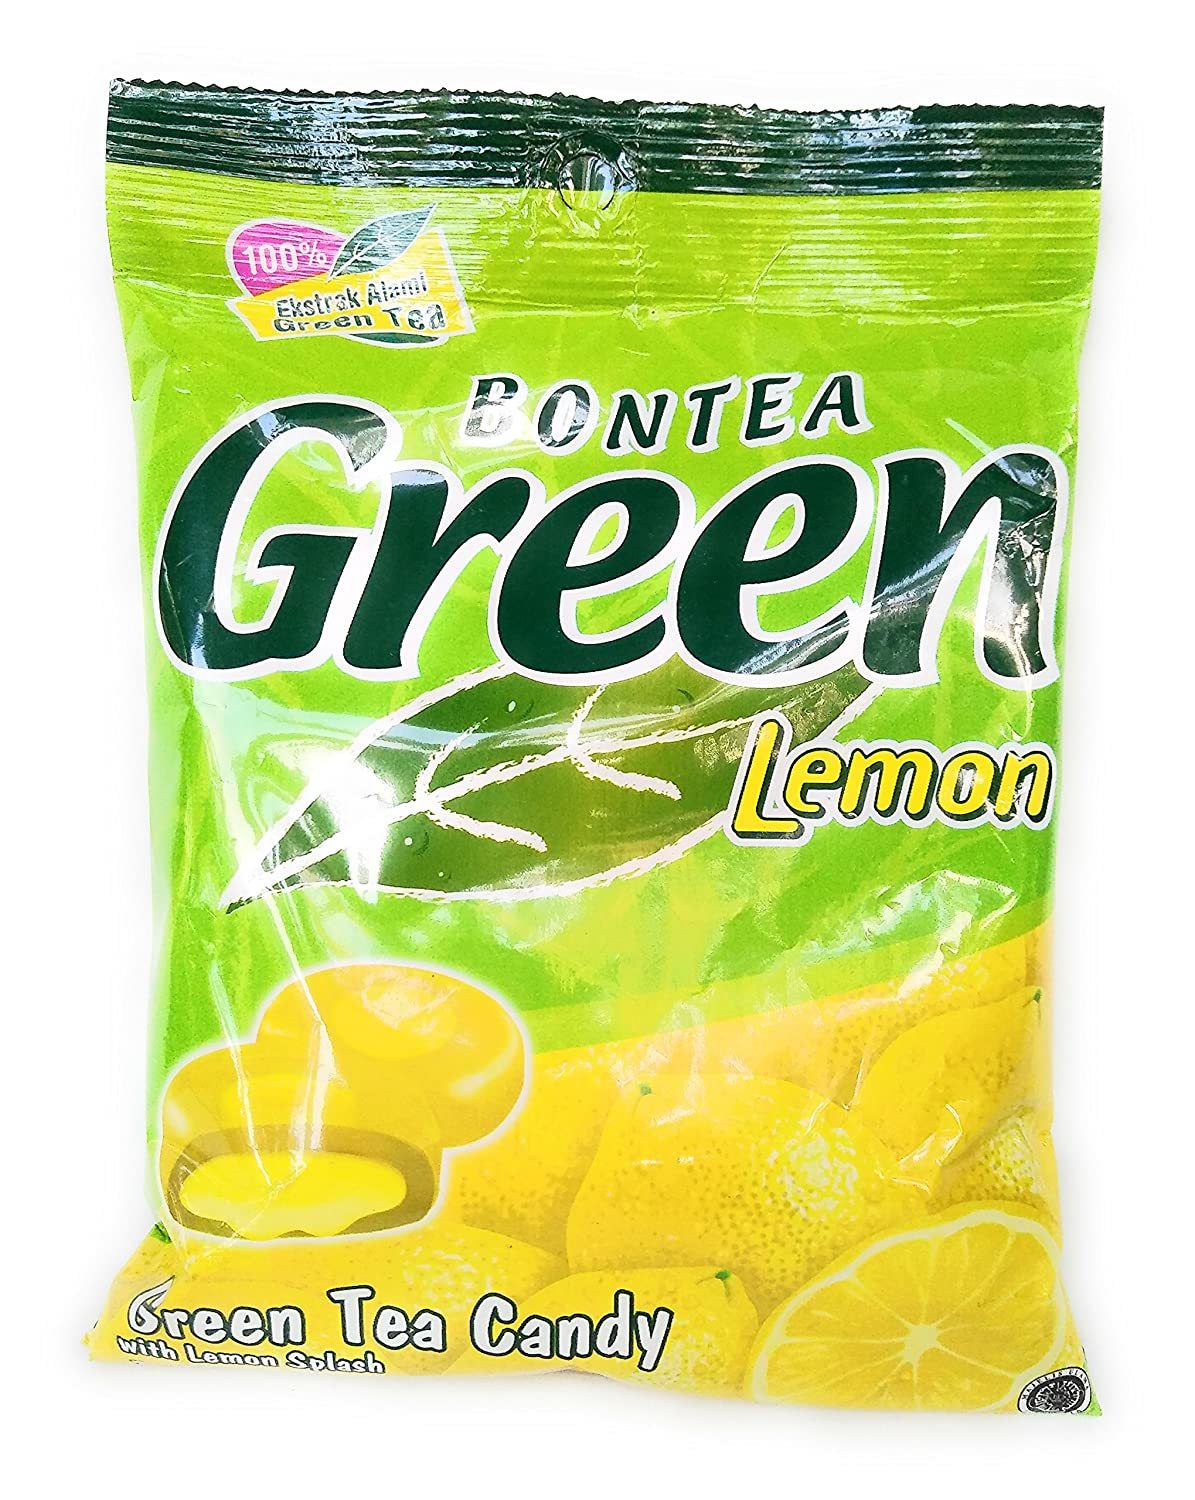 Bontea Green Tea Candy (Lemon), 144 Gram (Pack of 6)